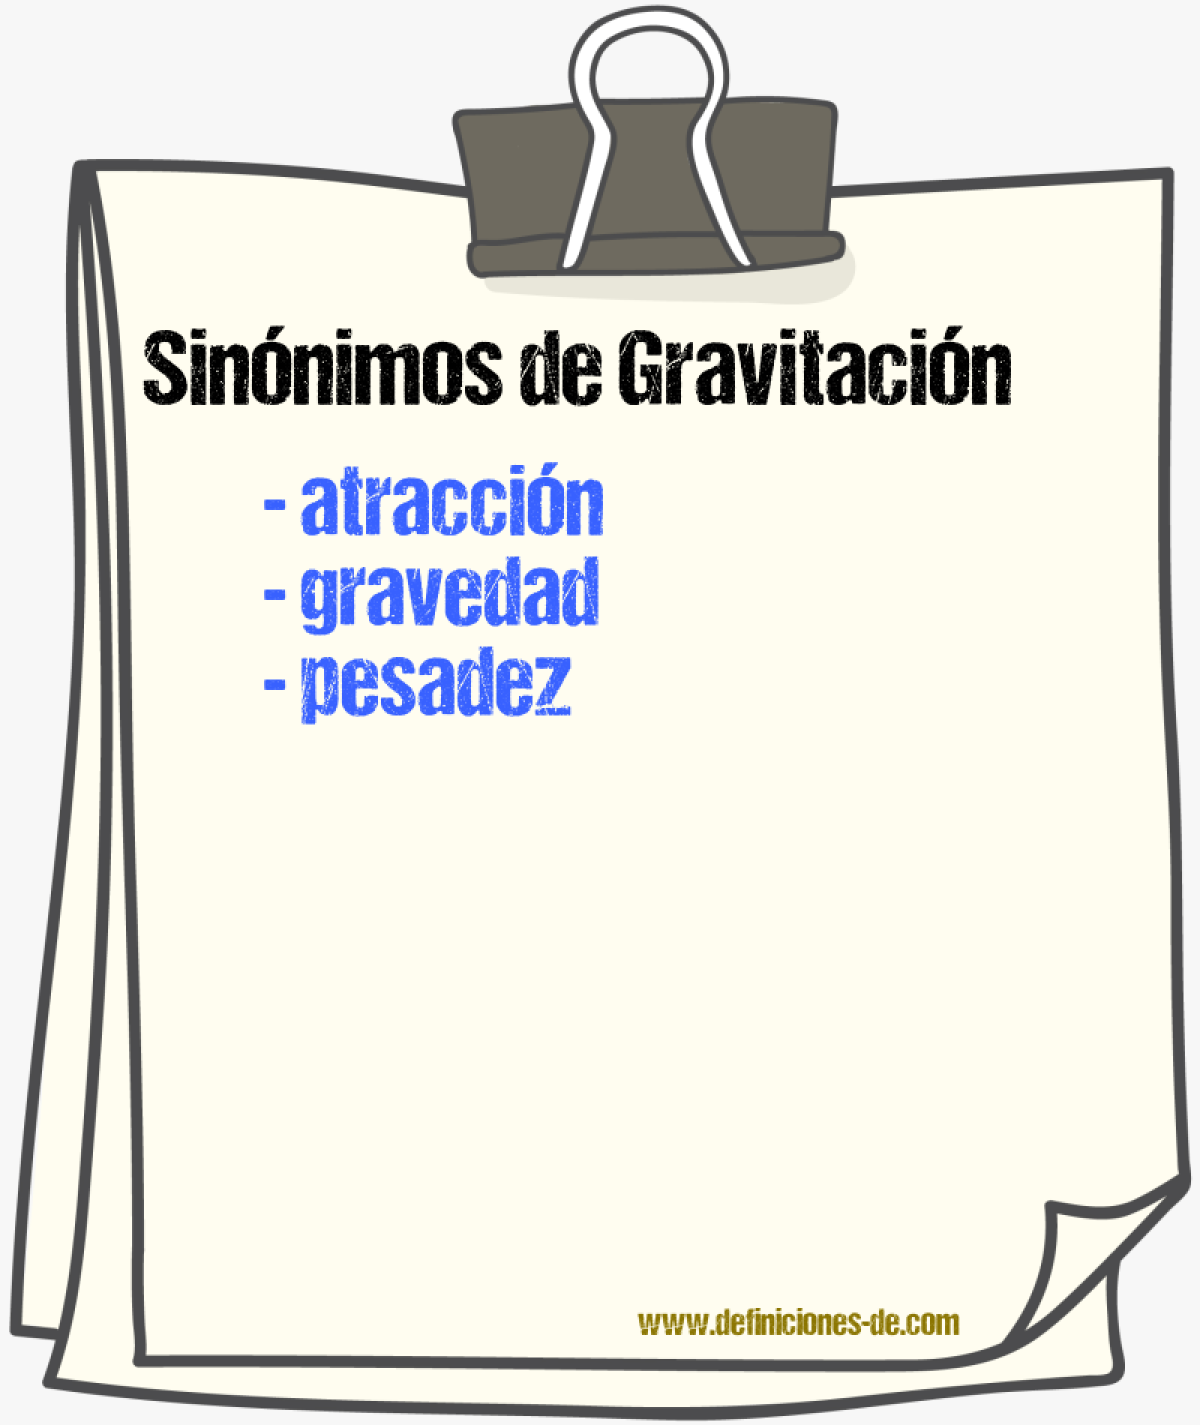 Sinónimos de gravitación